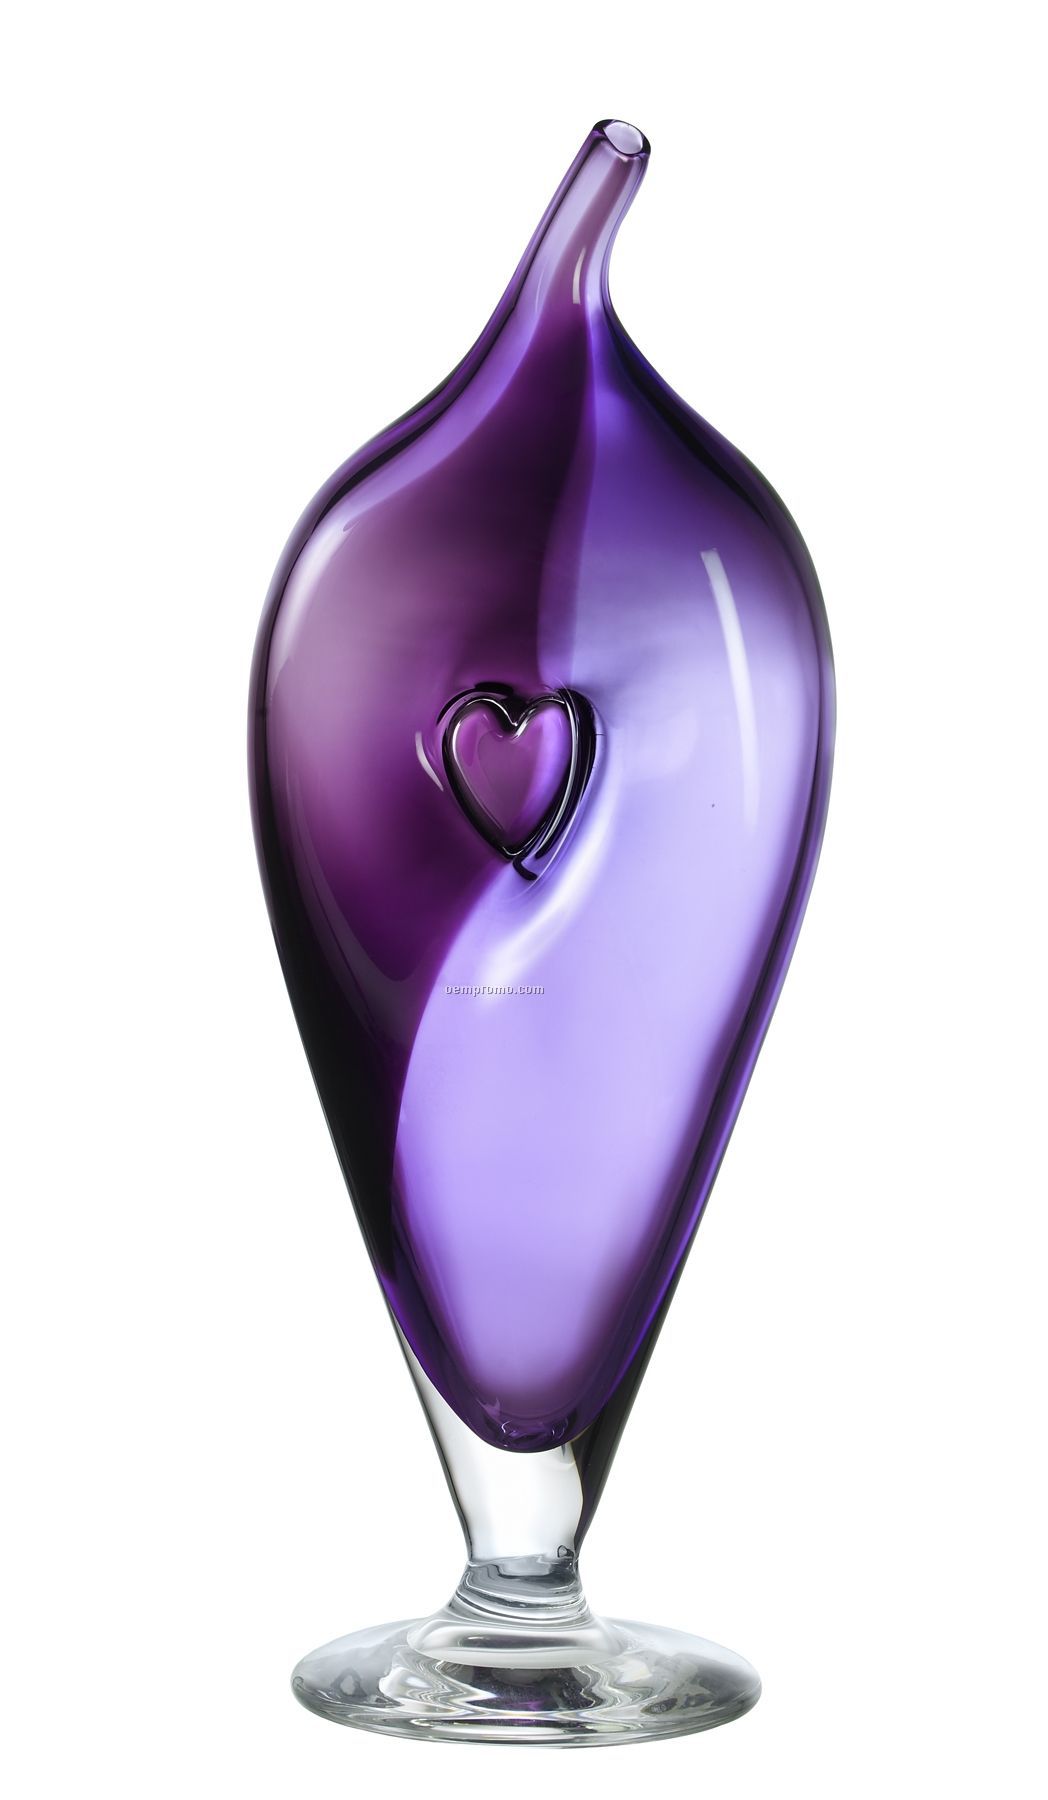 Bali Teardrop Glass Pedestal Vase With Heart Inset By Kjell Engman